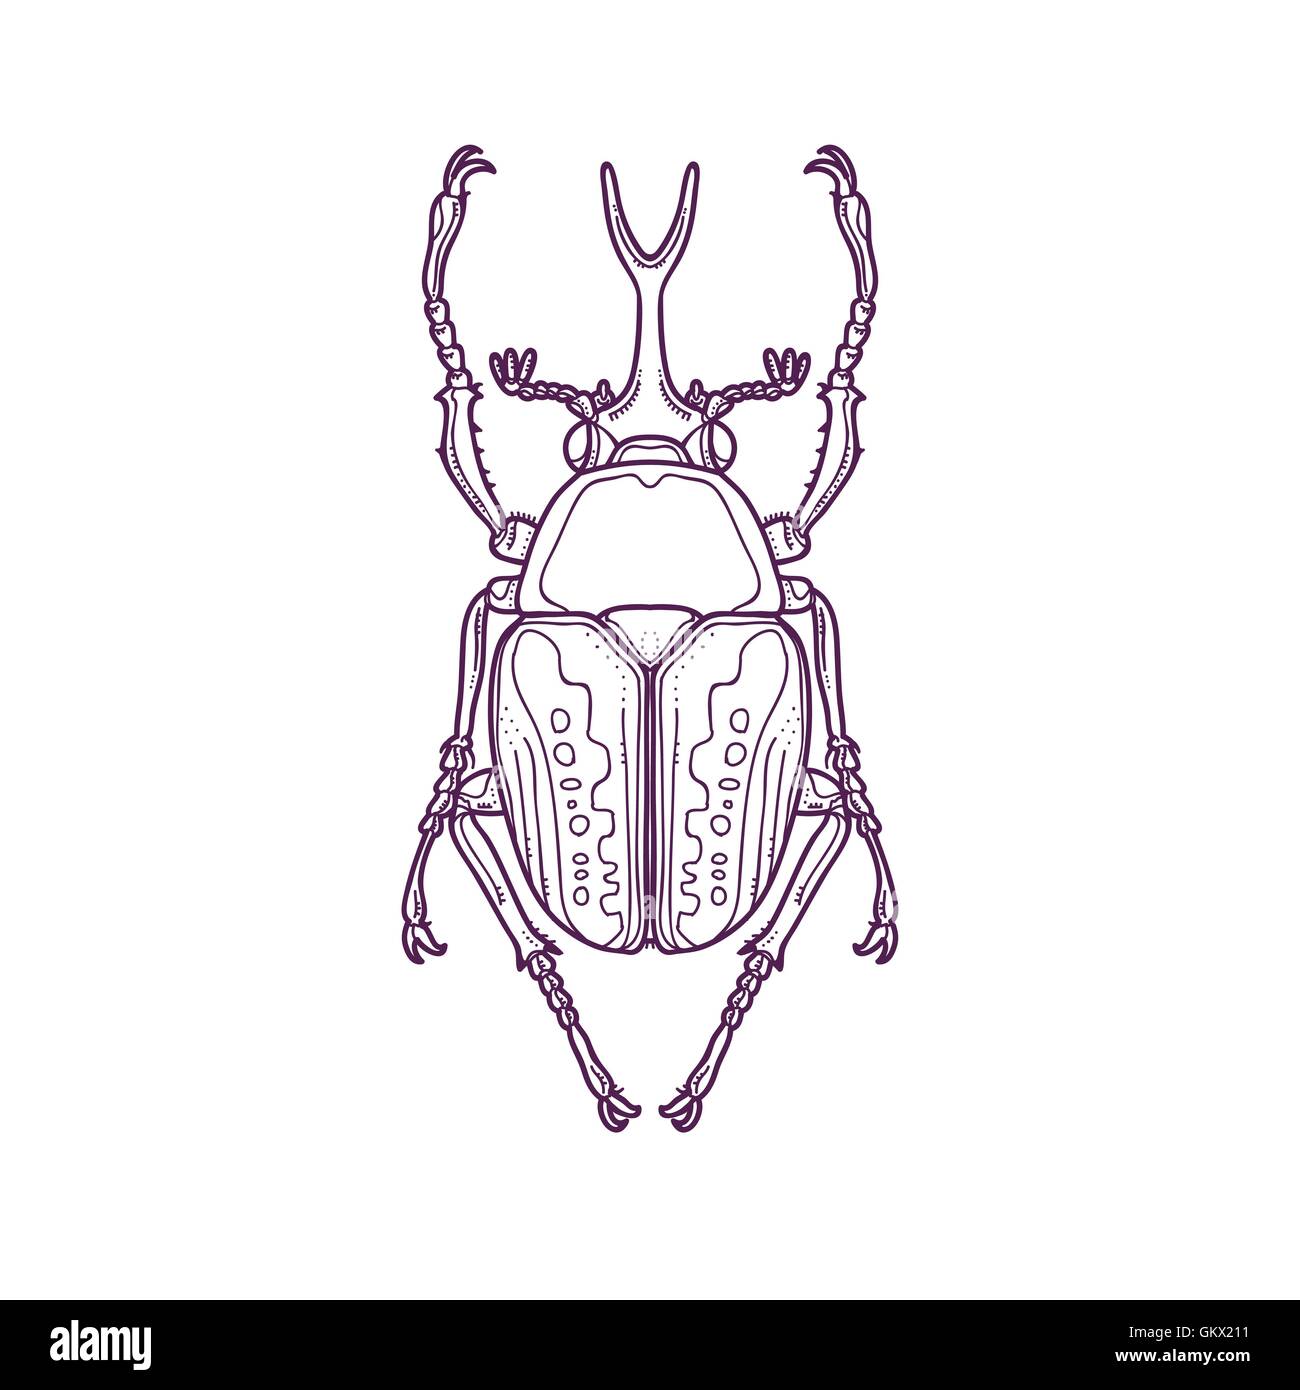 Vektor Illustration der Gliederung Skarabäus Beetle Bug Insekt Hand gezeichnet, Megalorrhina Harrisi procera Stock Vektor